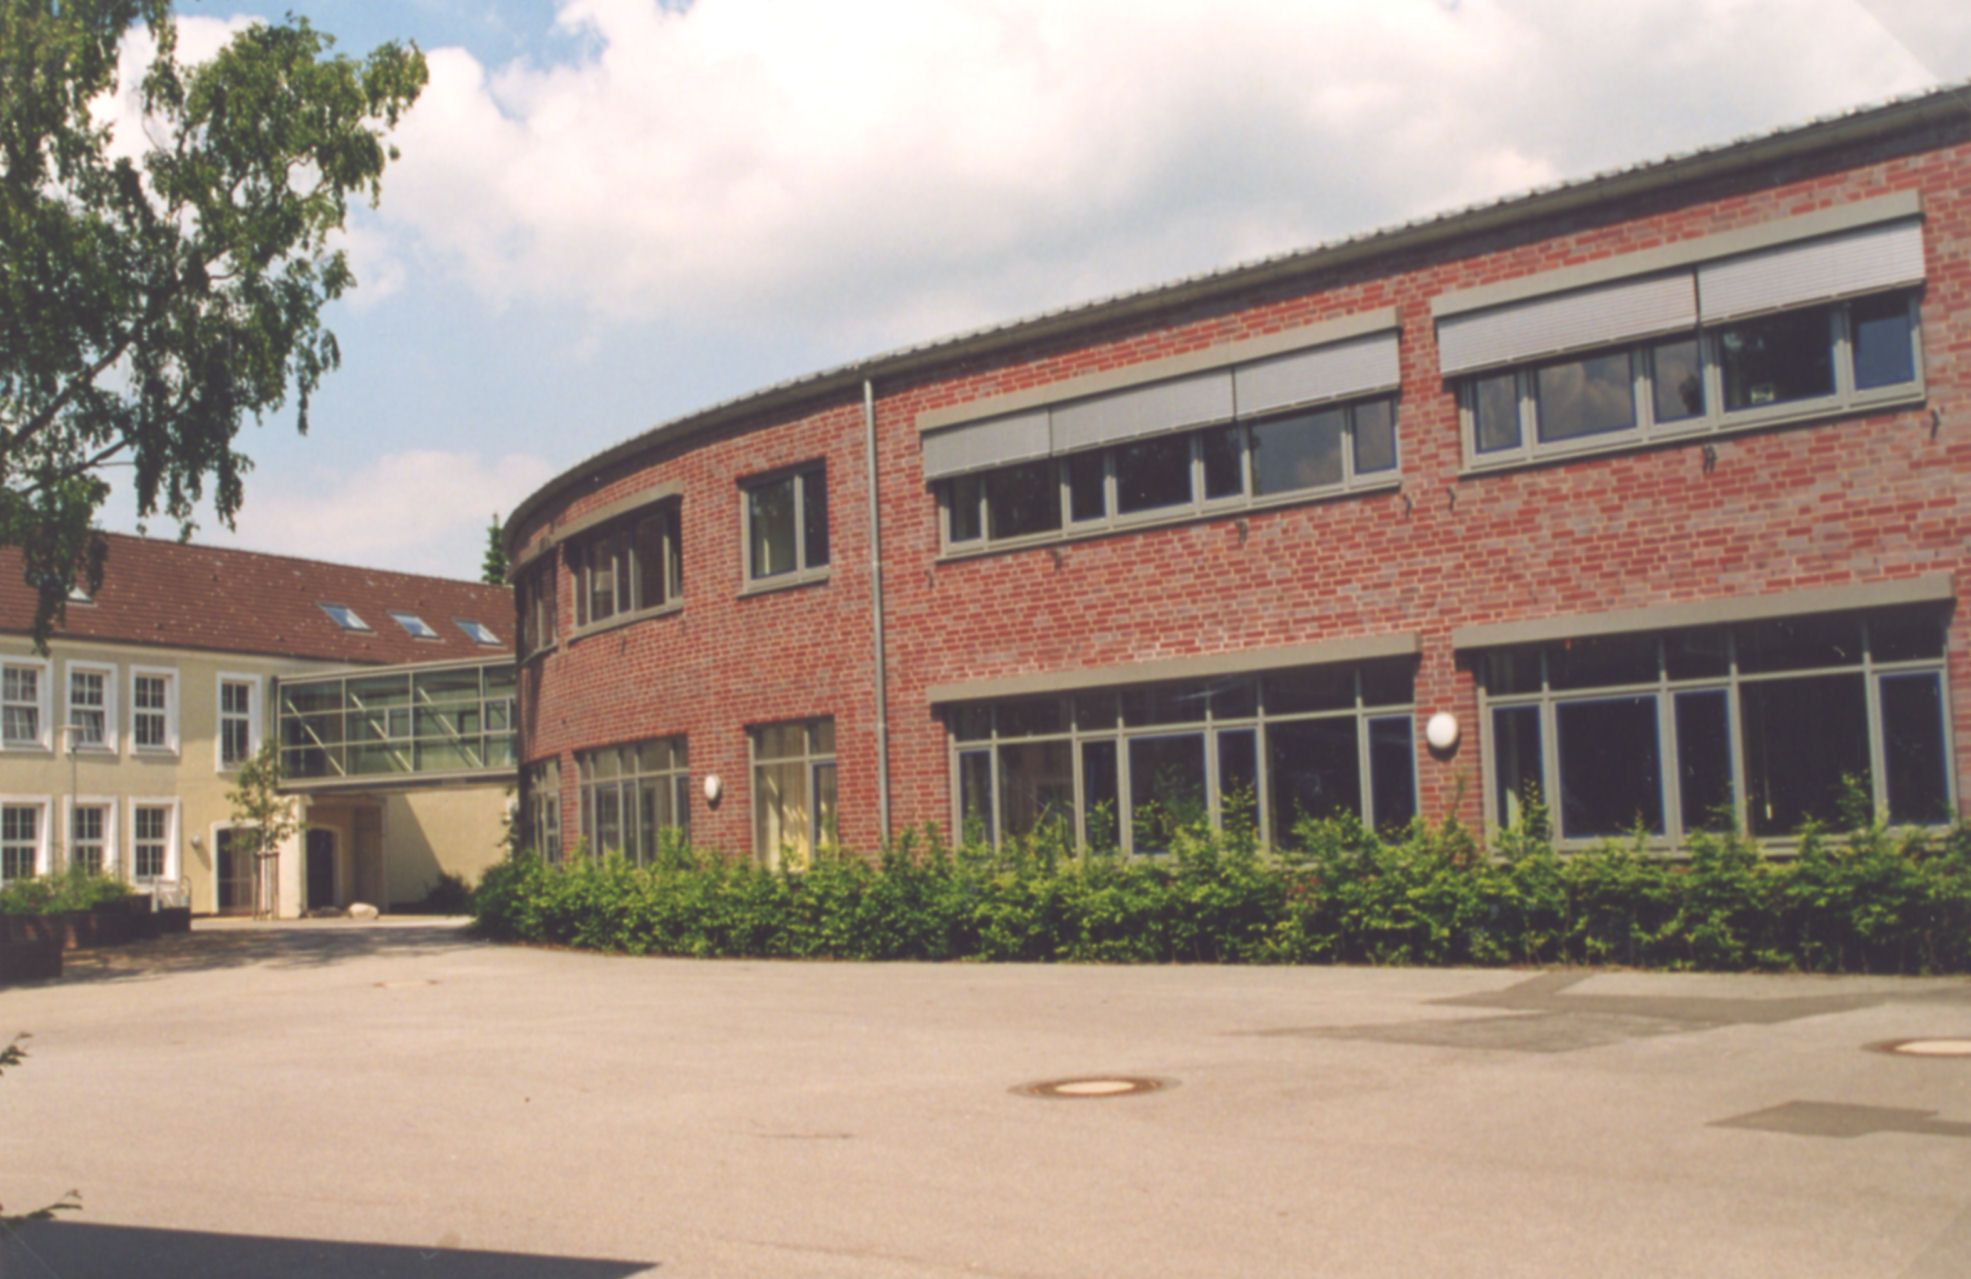 Boje-C.-Steffen-Gemeinschaftsschule